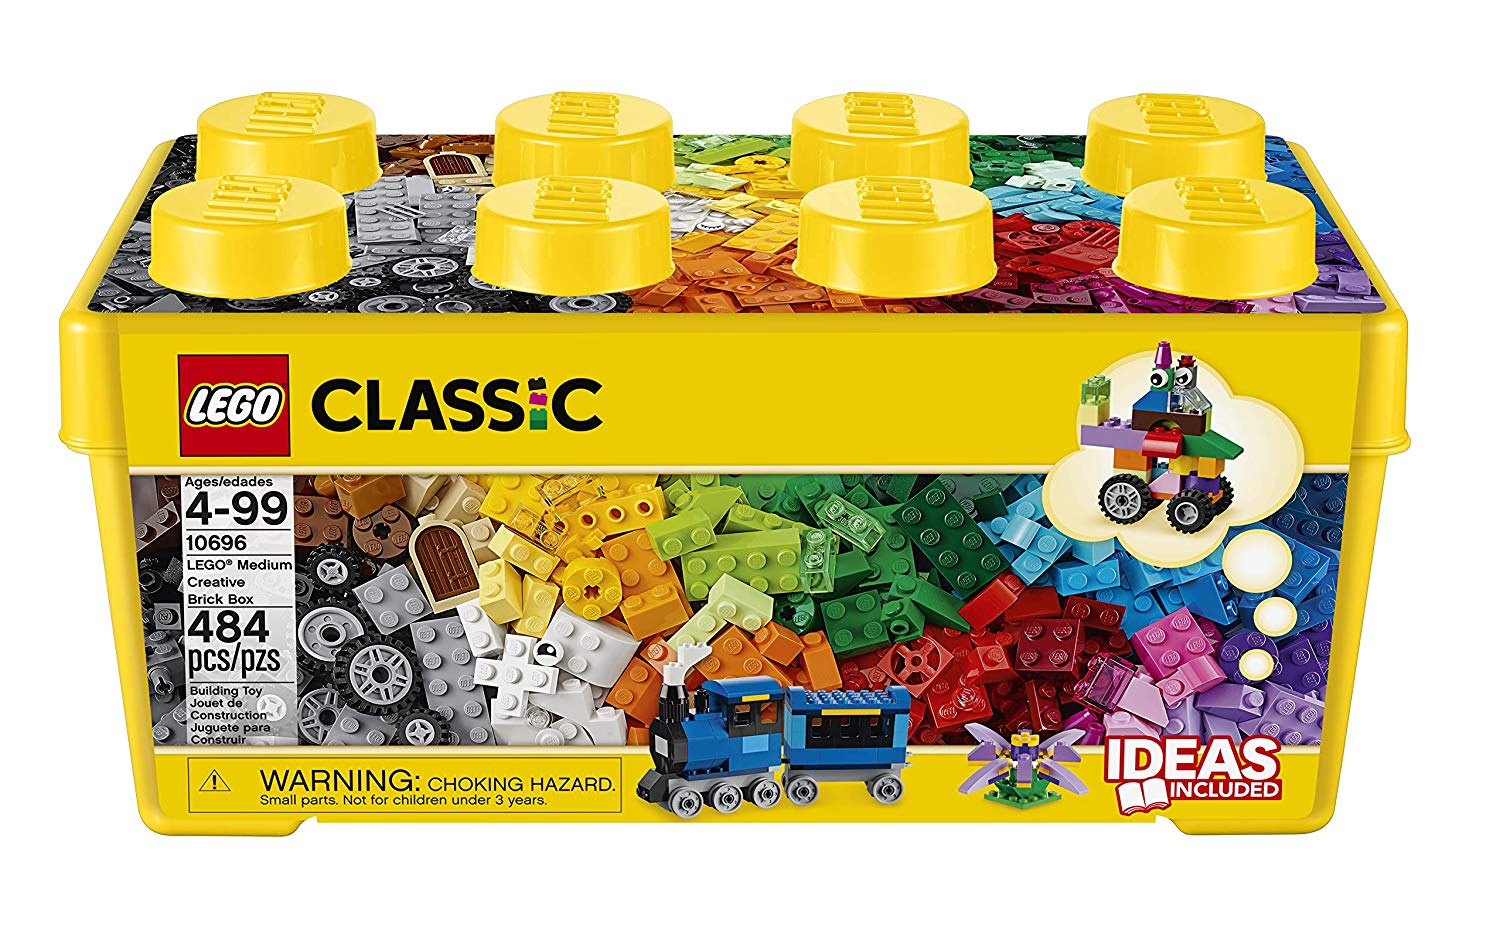 Deze verzameling LEGO-stenen in 35 verschillende kleuren is ontworpen voor bouwers van alle leeftijden, stimuleert de verbeelding en biedt eindeloze constructie en plezier. Het bestverkochte bouwspeelgoed.